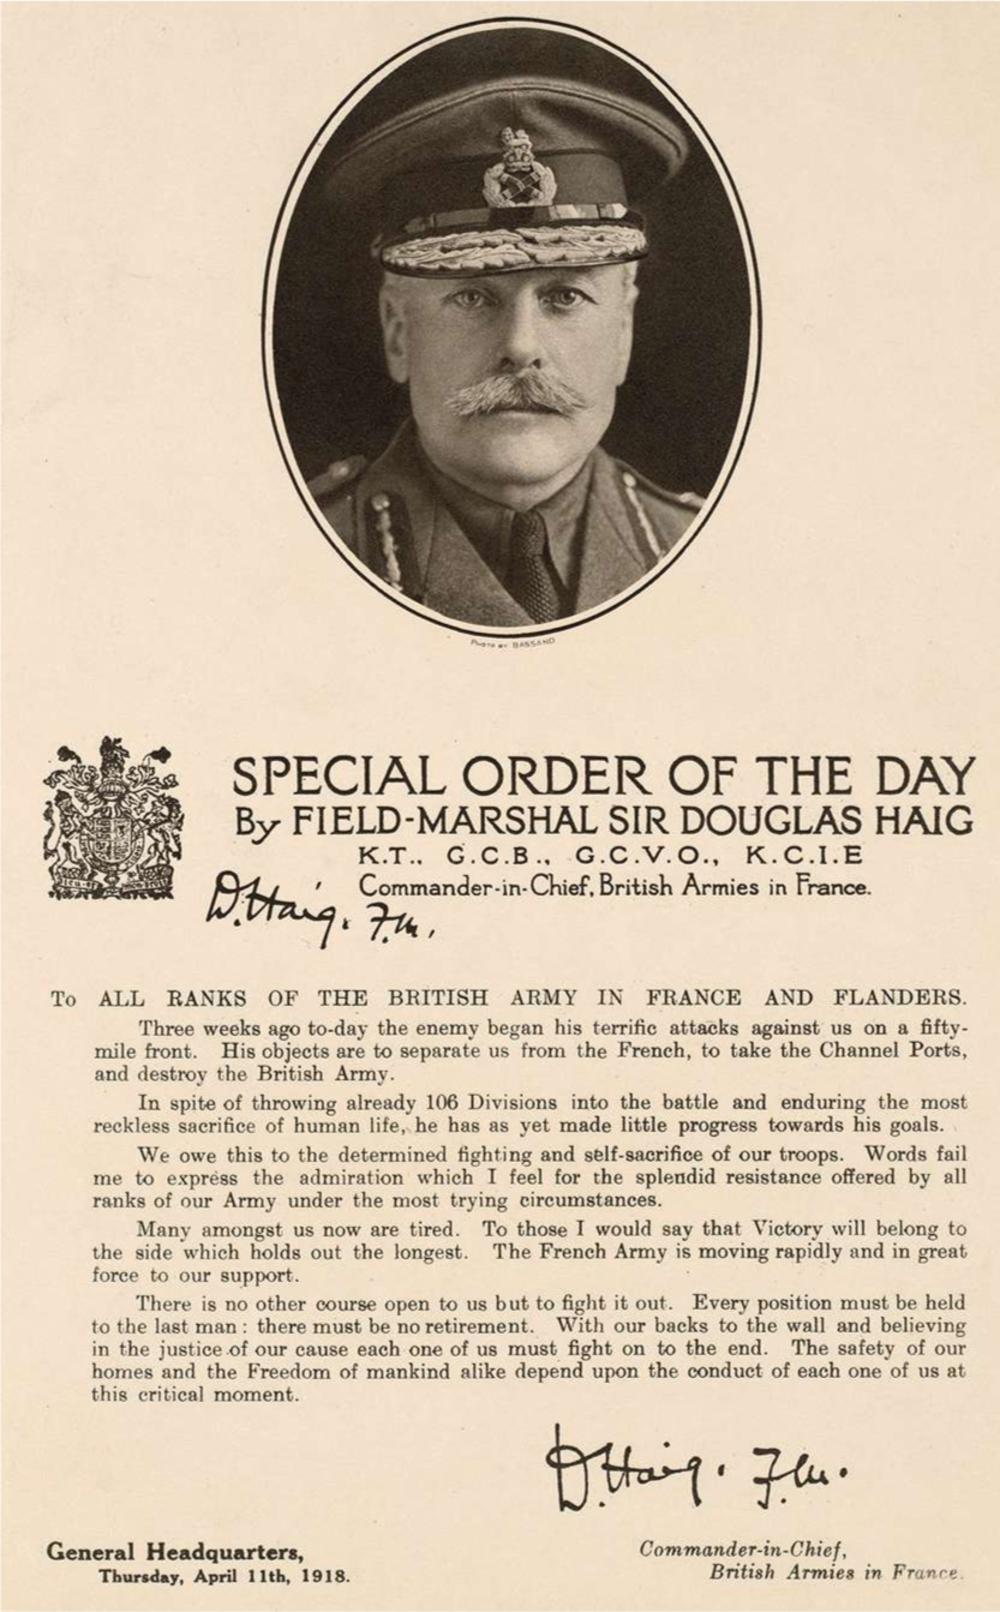 Het bekende 'backs-to-the-wall' - order van Douglas Haig, de Britse bevelhebber in Frankrijk, 11 april 1918. Dit bevel werd uitgegeven tijdens de tweede Duitse aanvalsoperatie. De situatie is niet rooskleurig en Haig draagt de Britse troepen op om elke positie tot het uiterste te verdedigen.